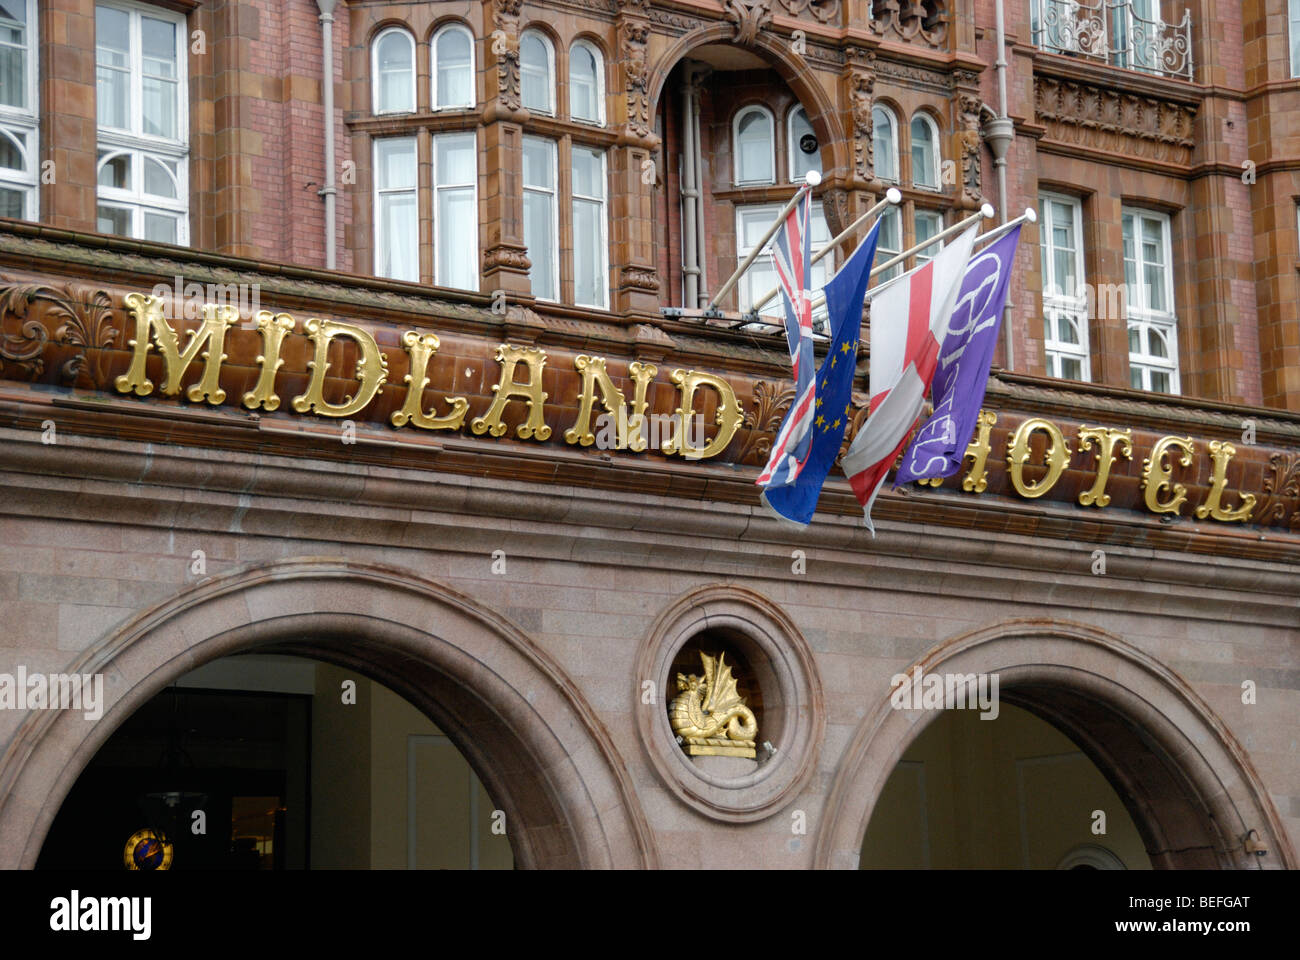 The Midland Hotel, Manchester, England, UK. Stock Photo